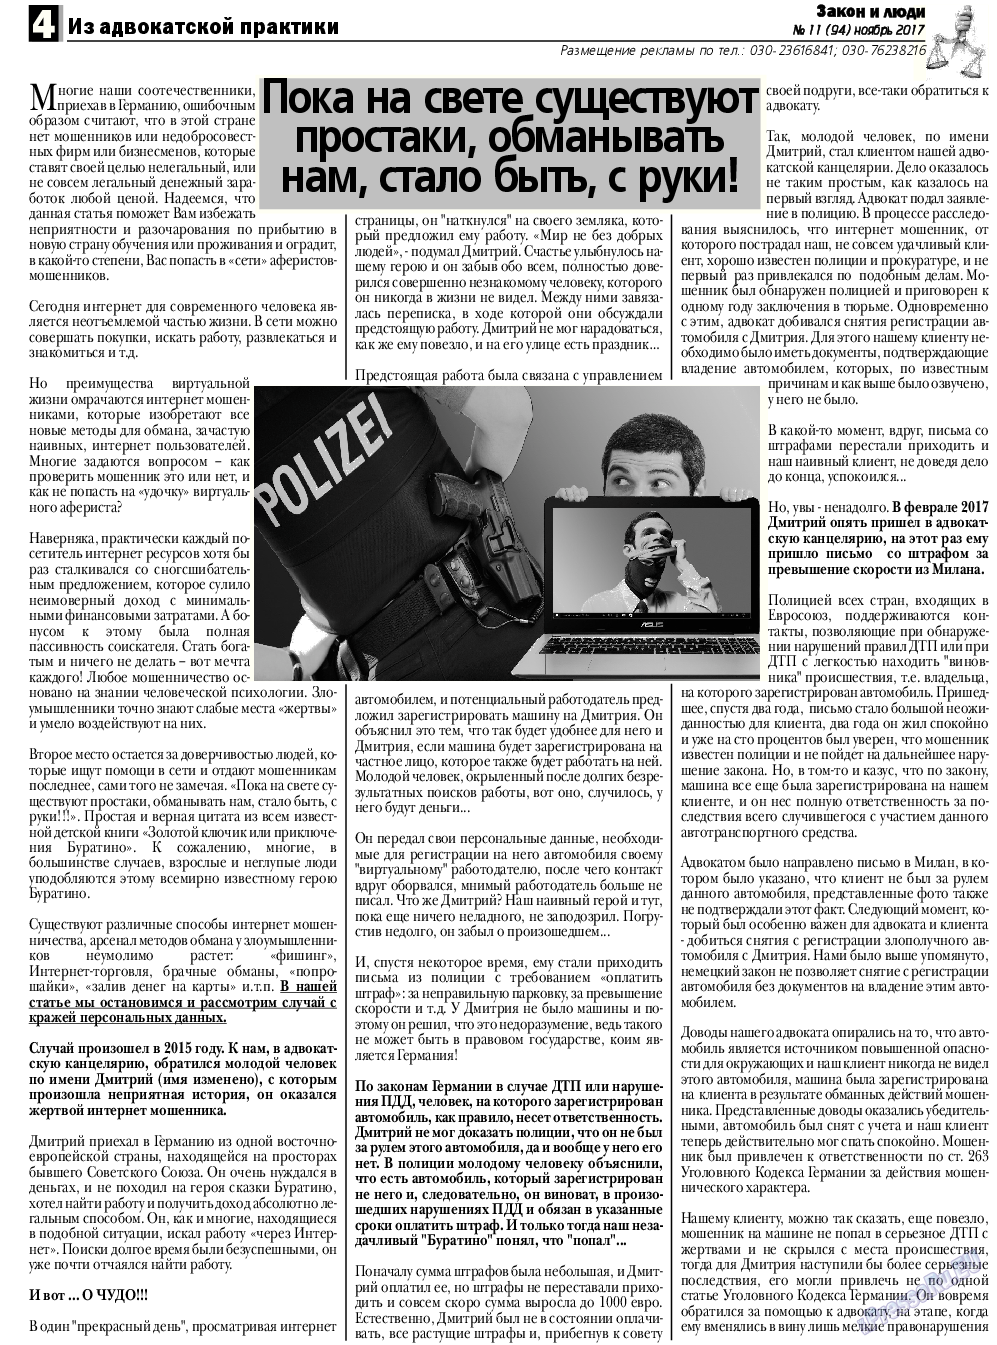 Закон и люди, газета. 2017 №11 стр.4